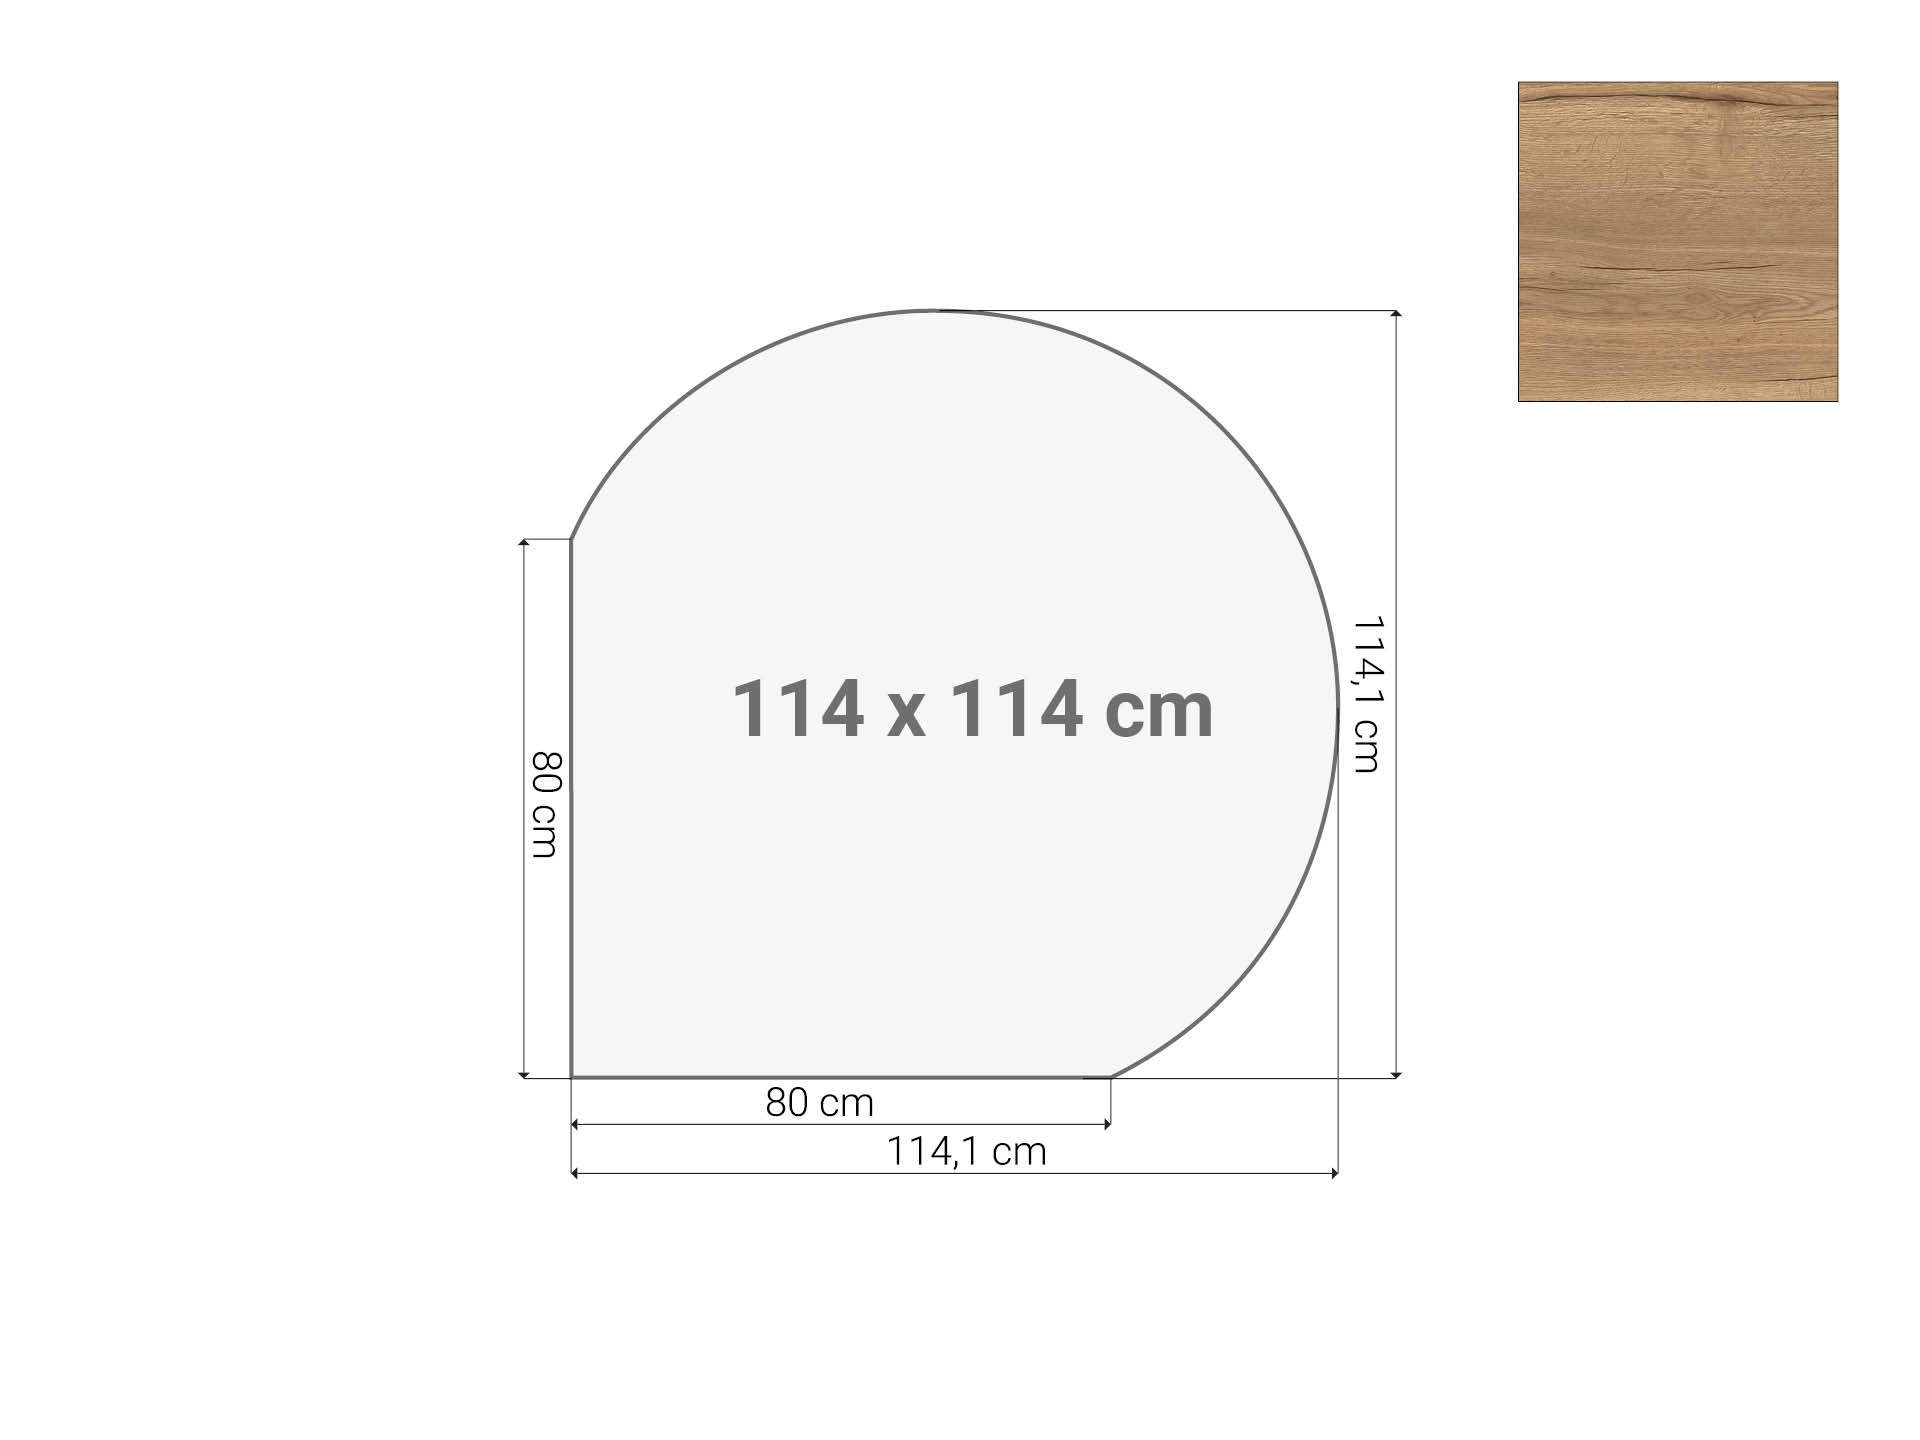 Vergaderstuk rond aanzetblad Eiken 120cm diameter 114x114 cm